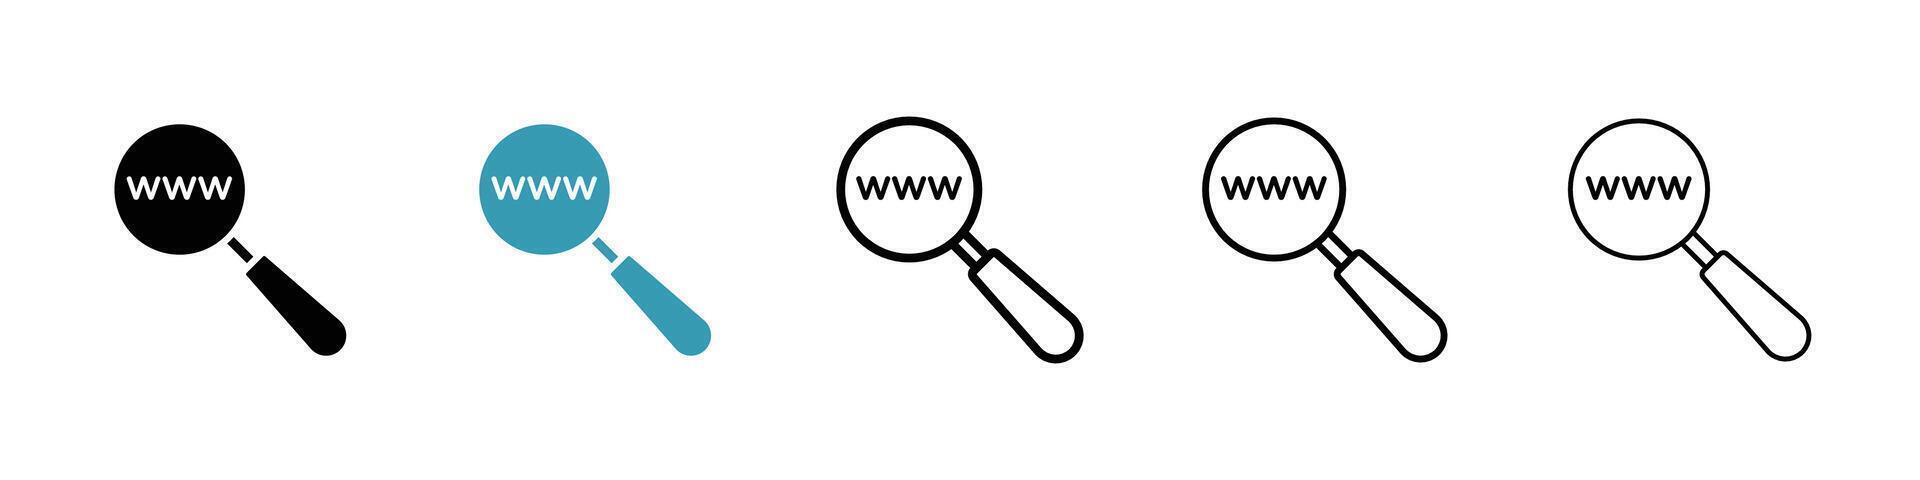 recherche site Internet icône vecteur